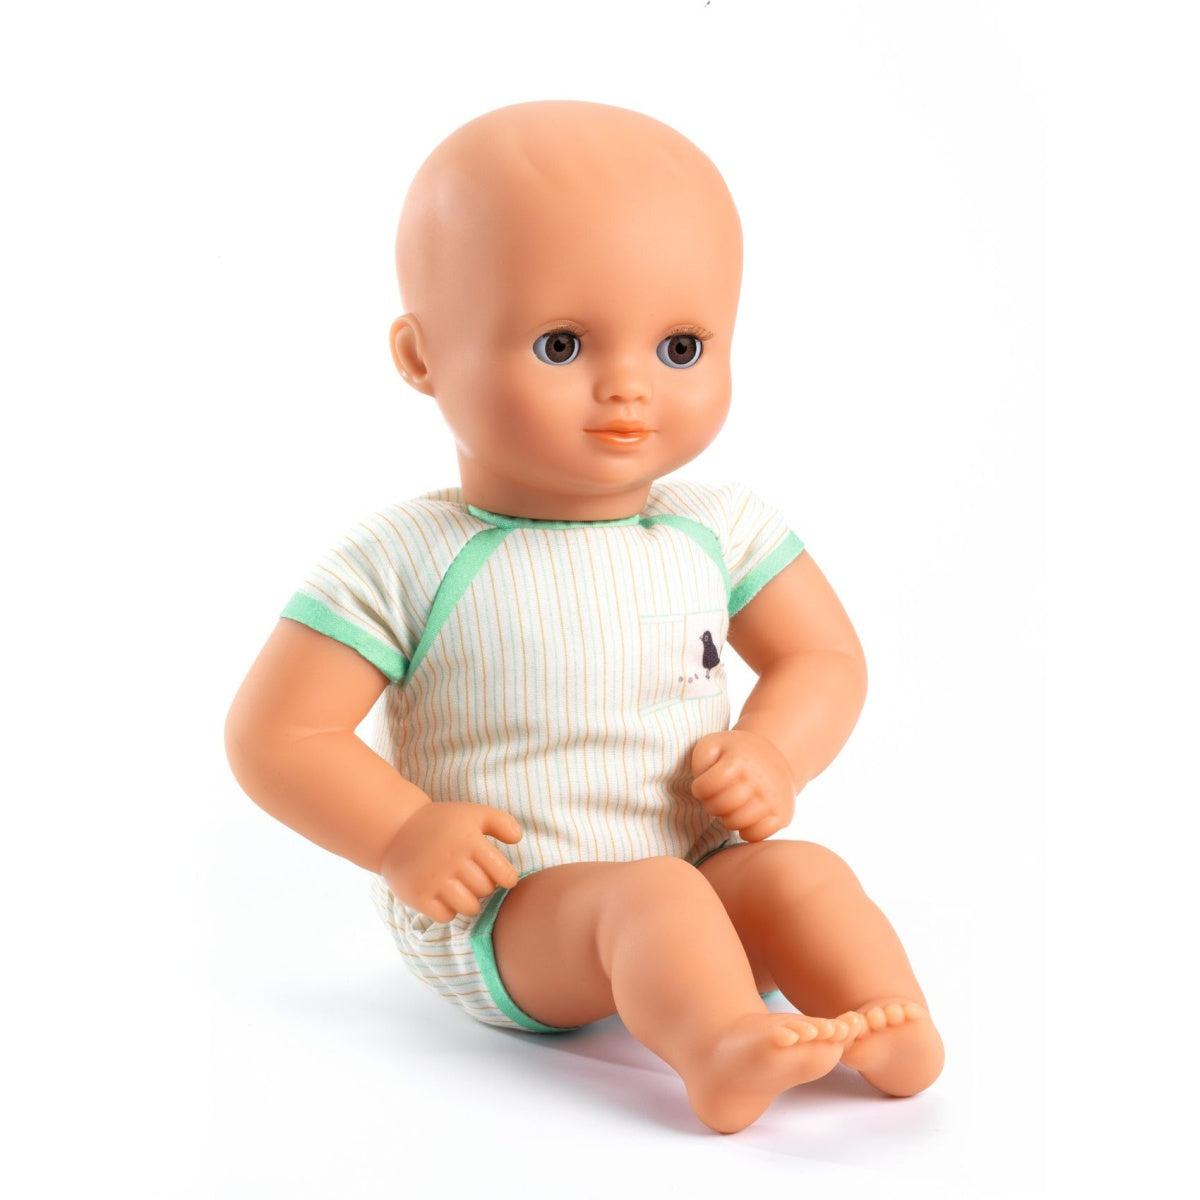 Die DJECO Puppe Pistache hat braune Schlafaugen und einen weichen anschmiegsamen Körper. Eine süße Puppe mit  Engelsgesicht für Kinder ab 18 Monaten. Sie ist leicht und mit 32 cm perfekt für kleine Arme geeignet.